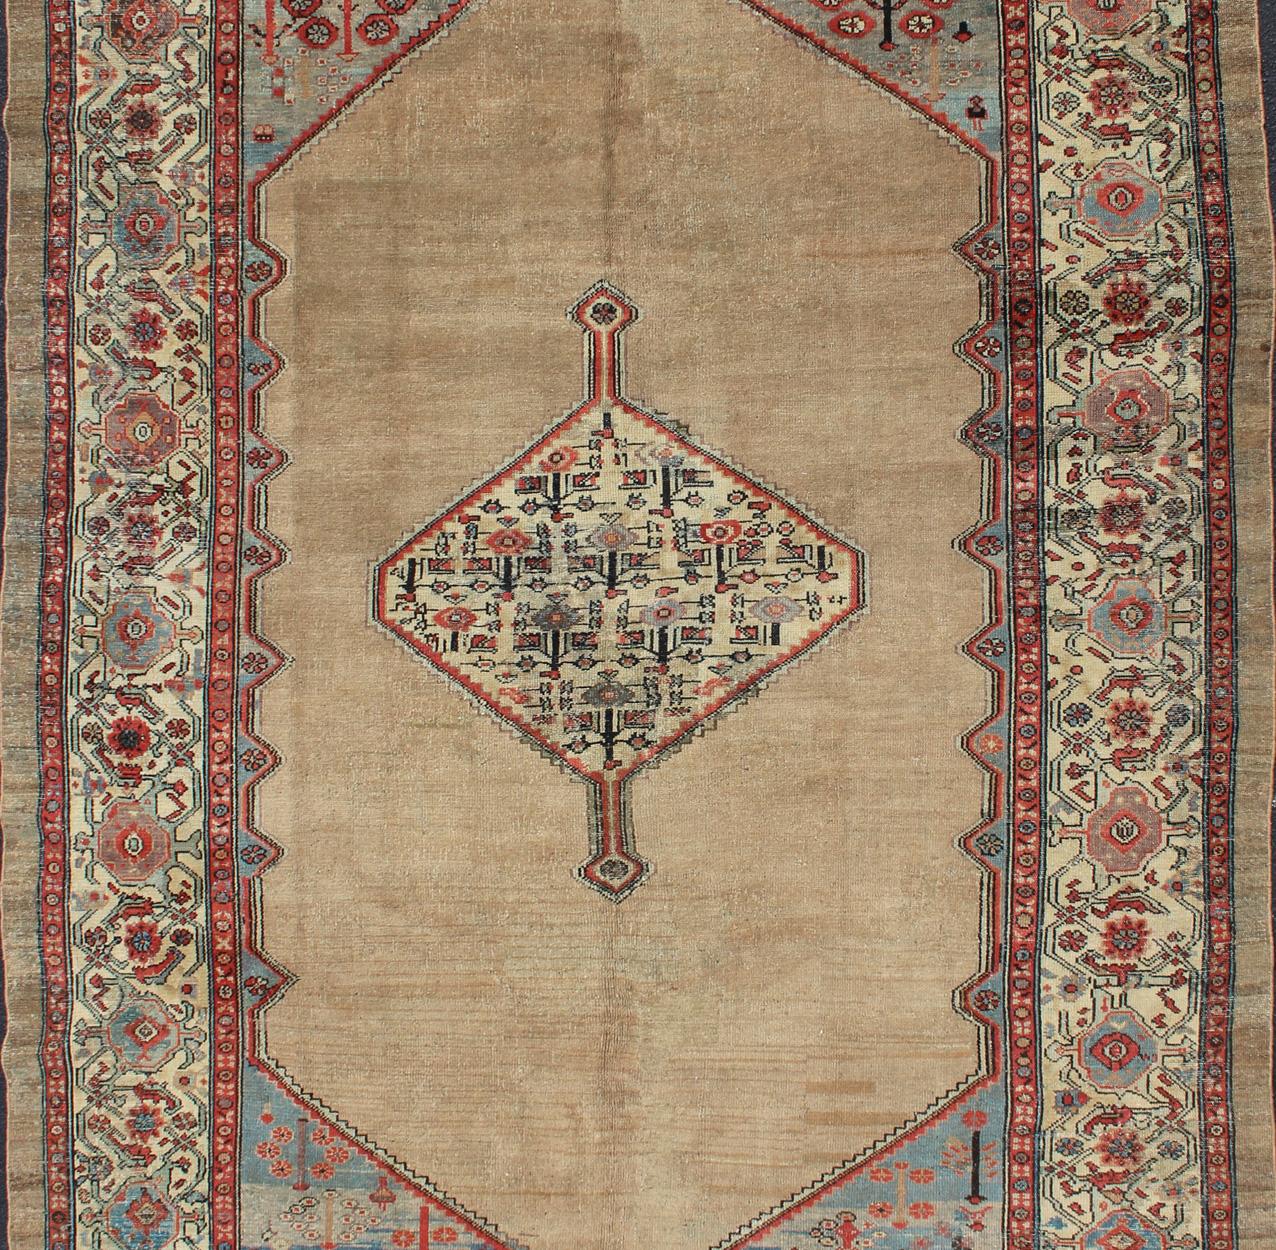 Geometrisches Design Antiker Medaillon Serab antiker Teppich aus Persien in mehrfarbigen neutralen Tönen, Teppich EB-200641, Herkunftsland / Typ: Iran / Serab, um 1910.

Dieser handgewebte, antike persische Bakshaish-Serab-Teppich zeigt ein